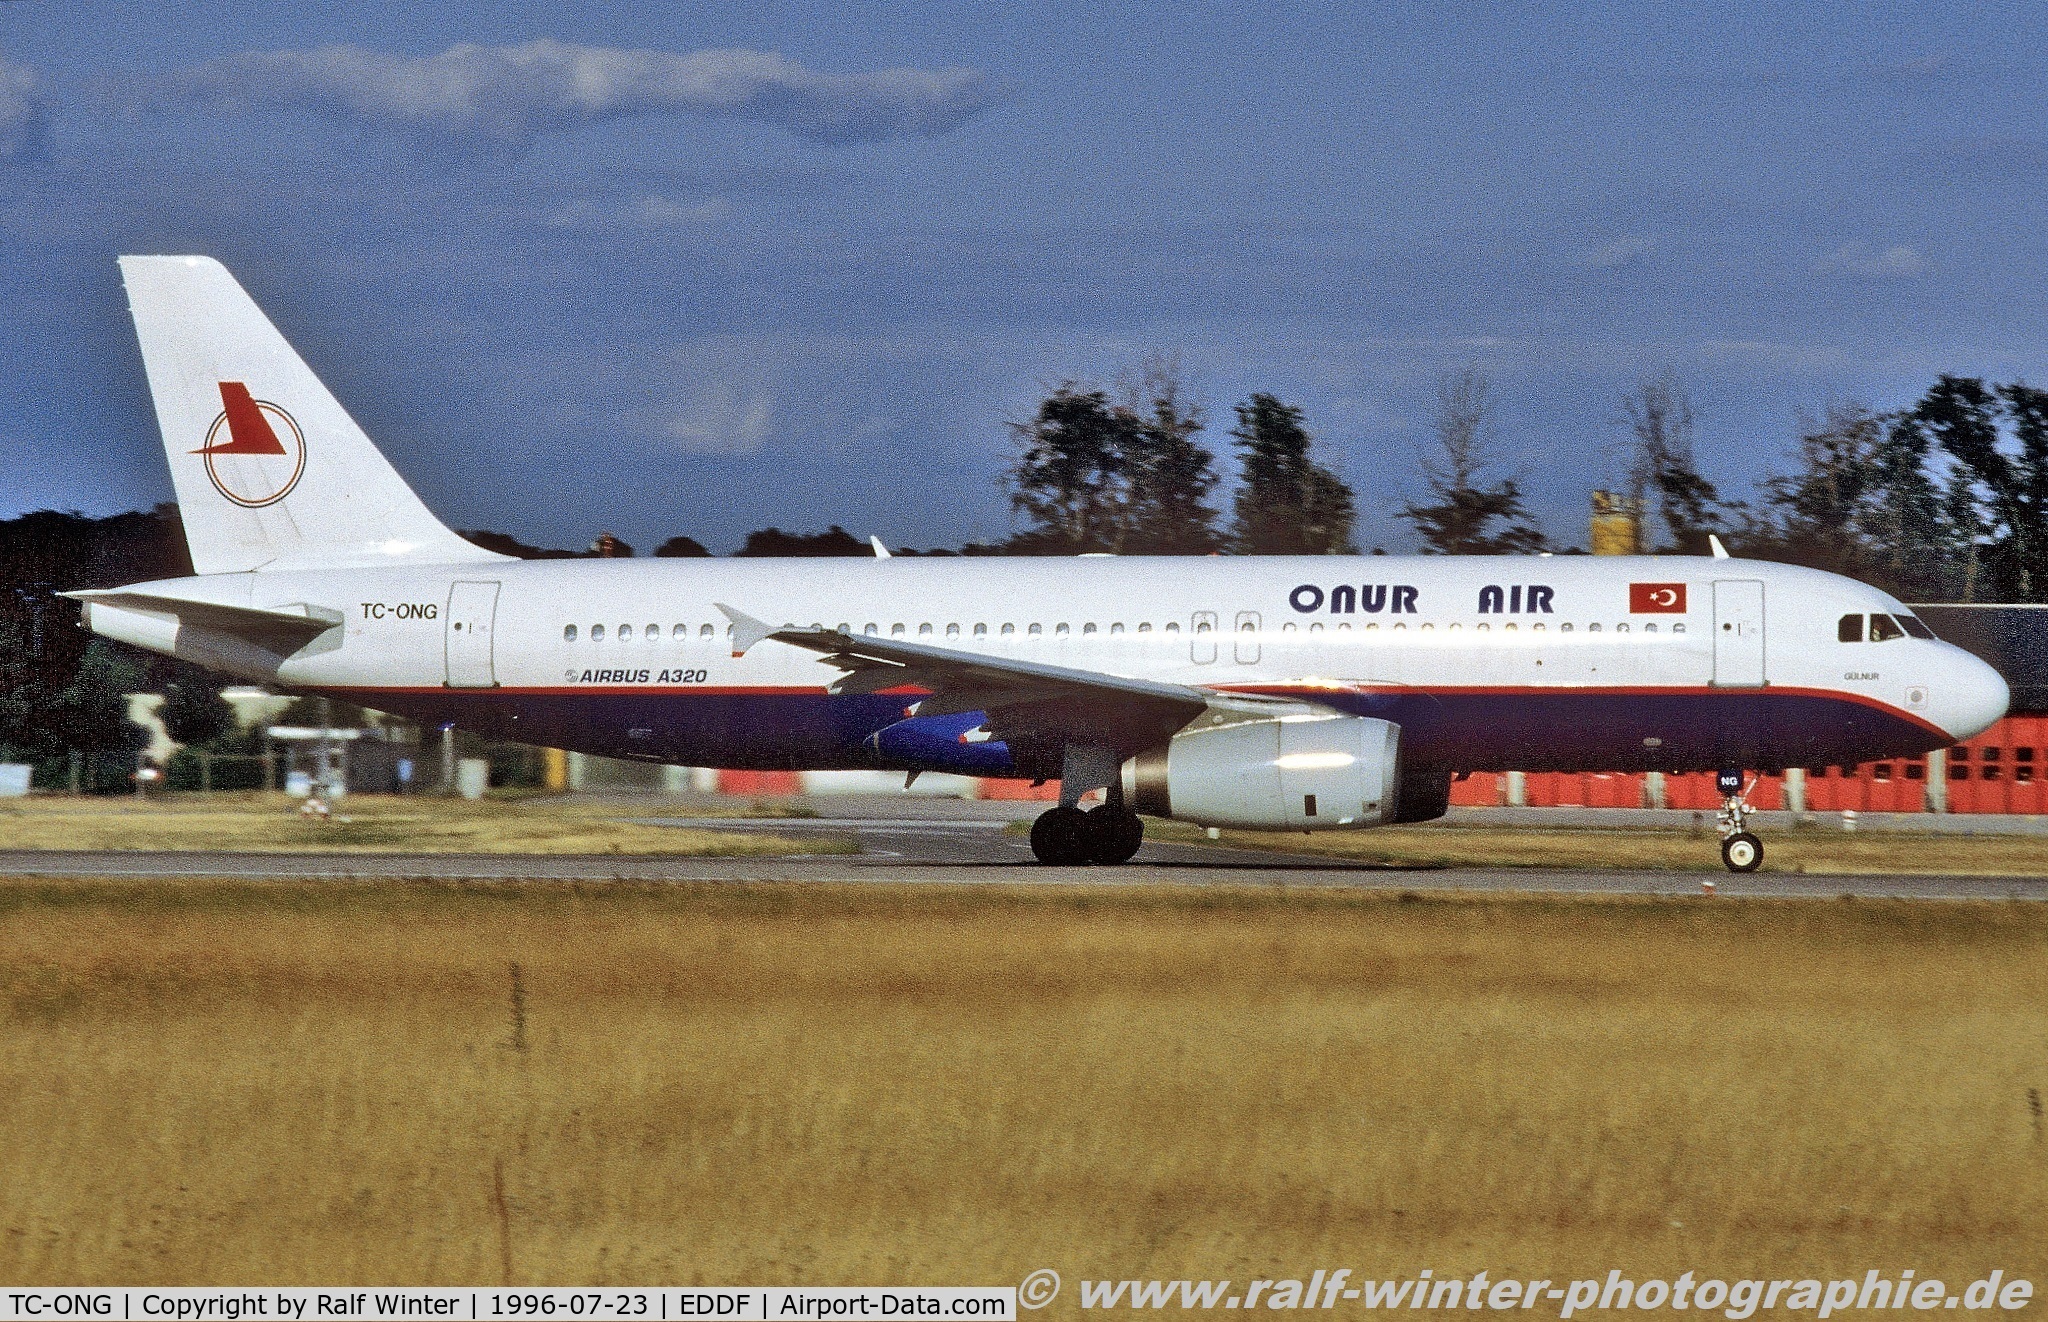 TC-ONG, 1992 Airbus A320-231 C/N 361, Airbus A320-231 - 8Q OHY Onur Air - 361 - TC-ONG - 23.07.1996 - FRA